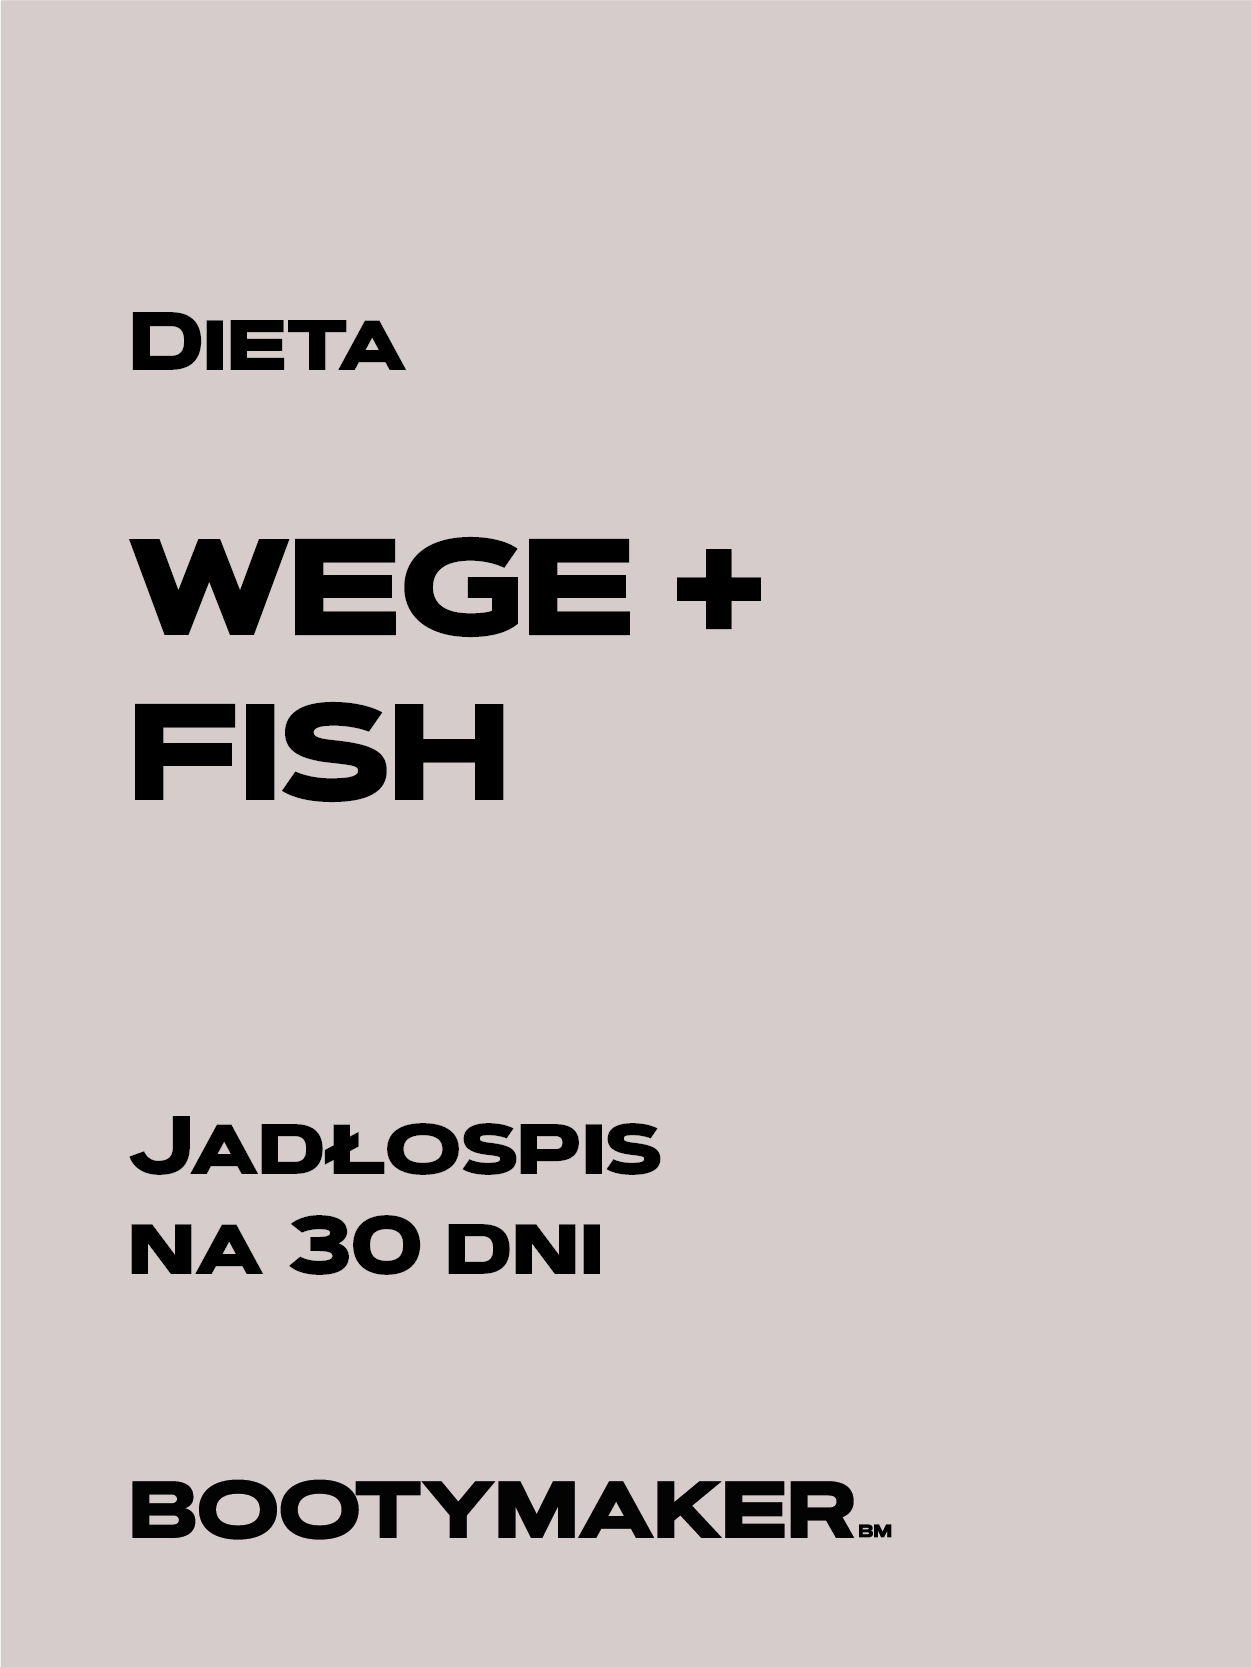 DIETA WEGE+ FISH